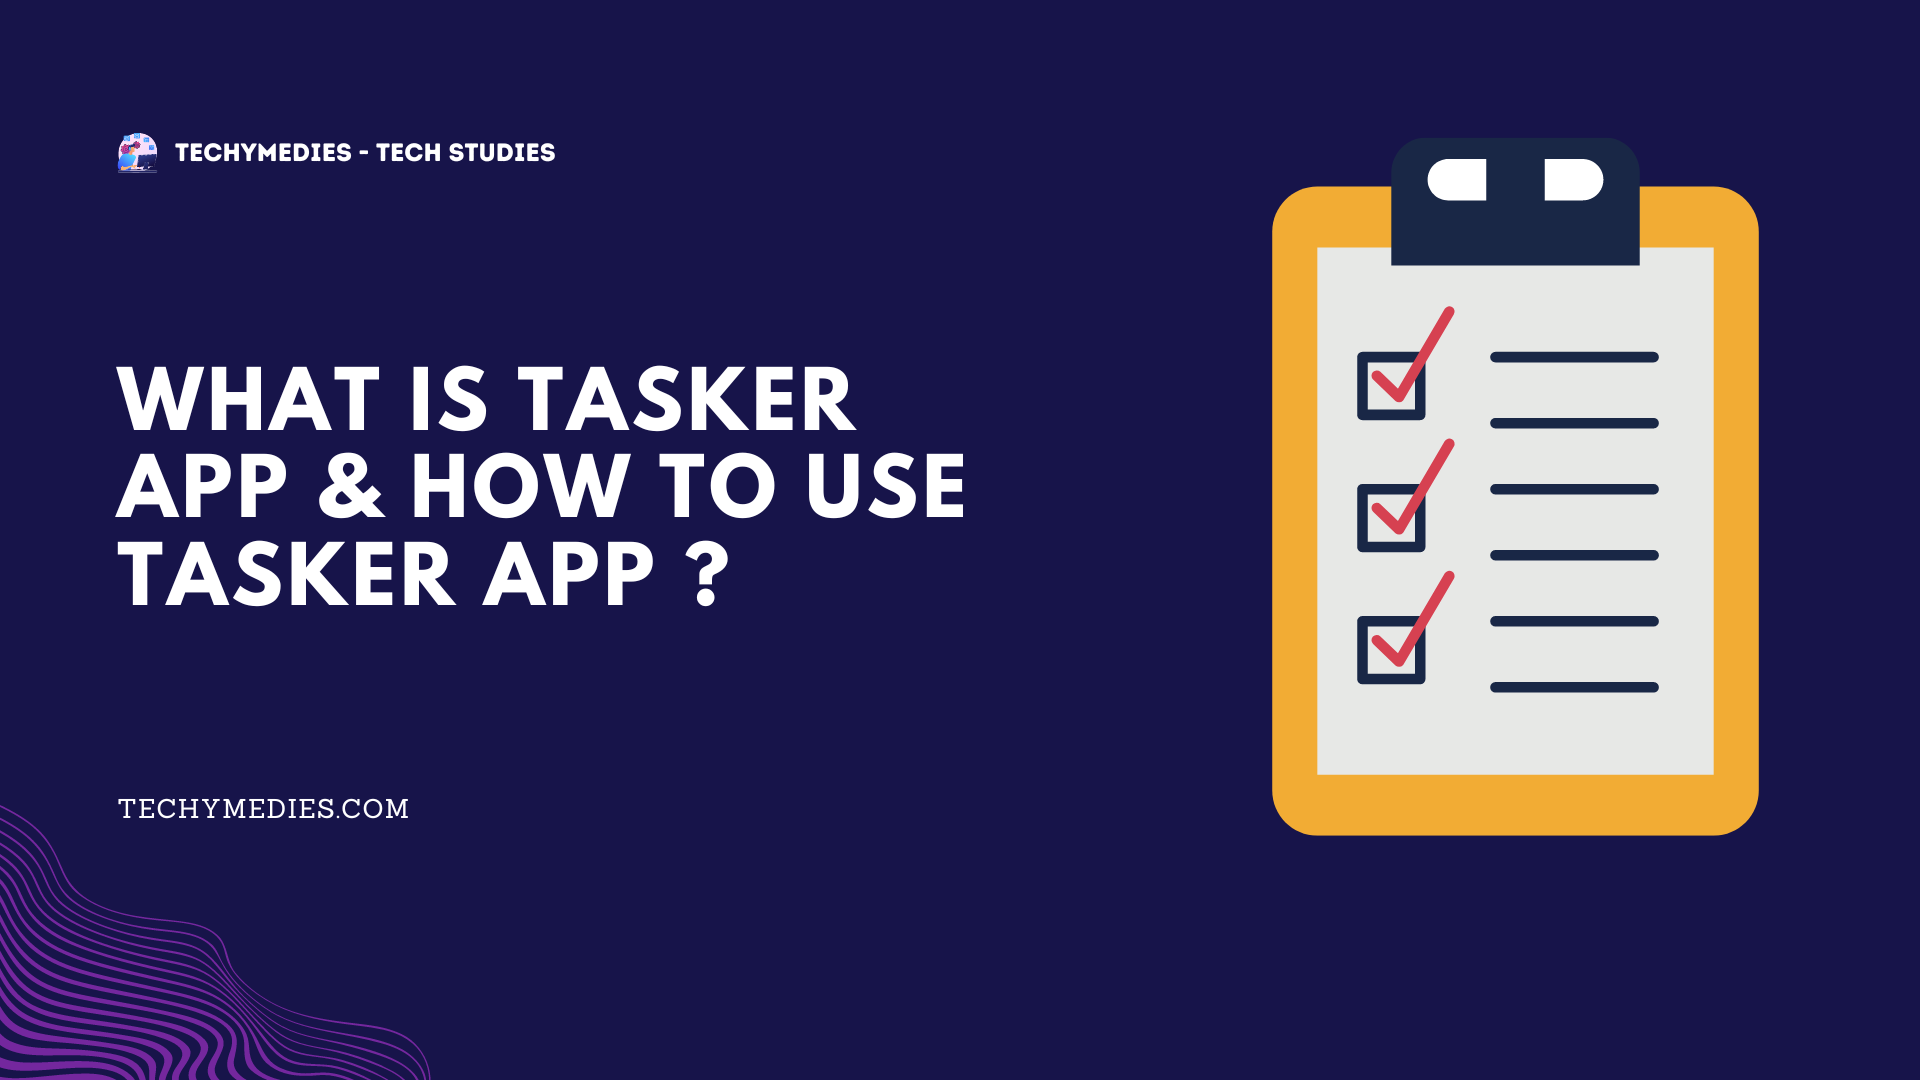 What Is Tasker App & How To Use Tasker App